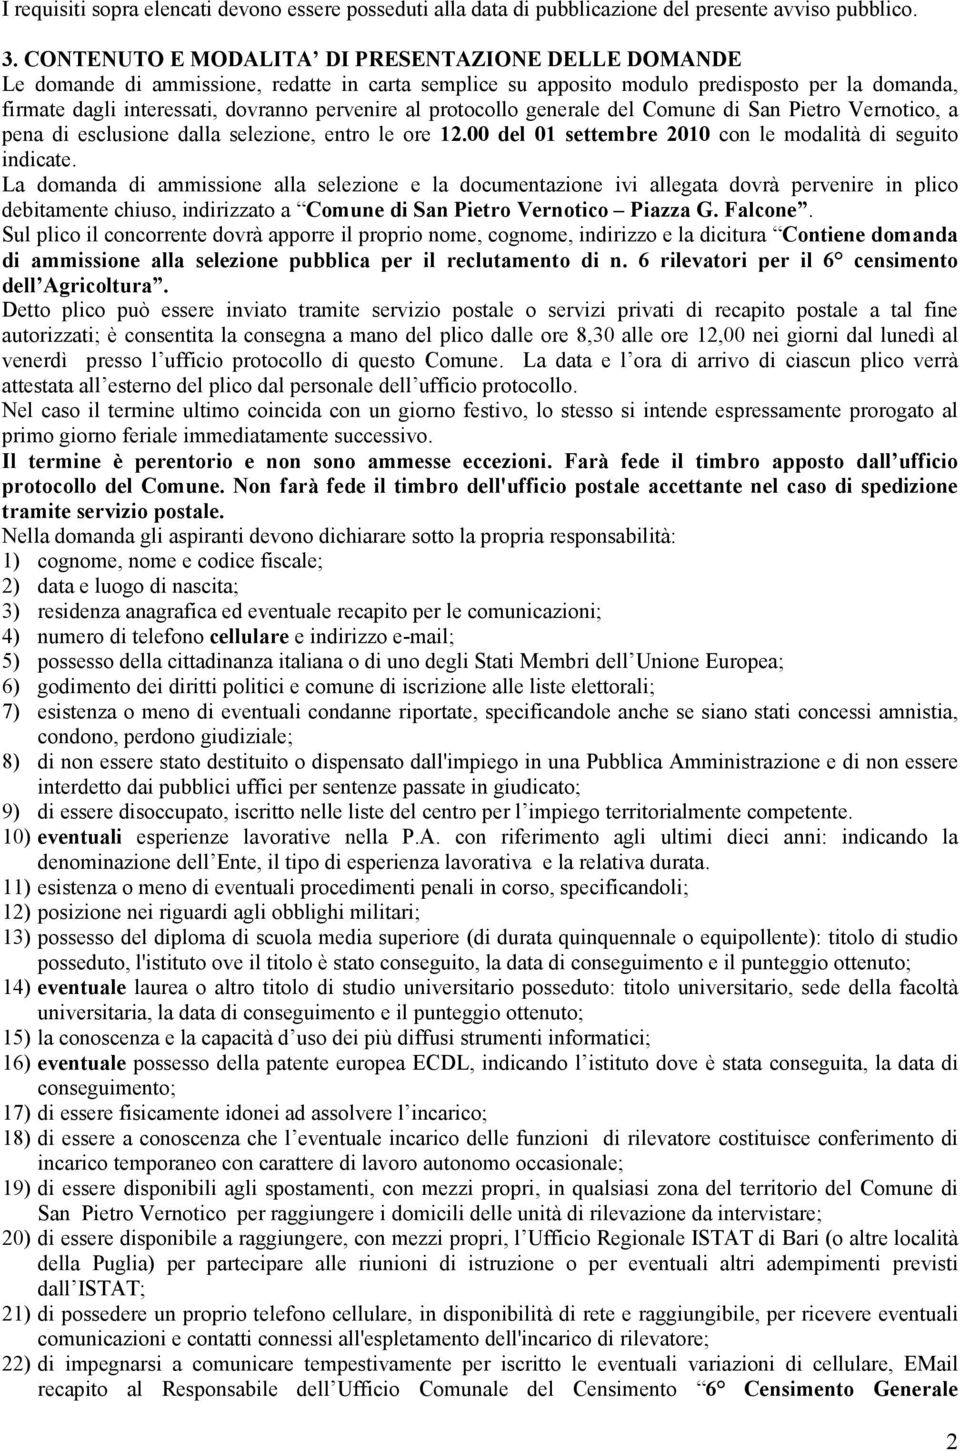 protocollo generale del Comune di San Pietro Vernotico, a pena di esclusione dalla selezione, entro le ore 12.00 del 01 settembre 2010 con le modalità di seguito indicate.